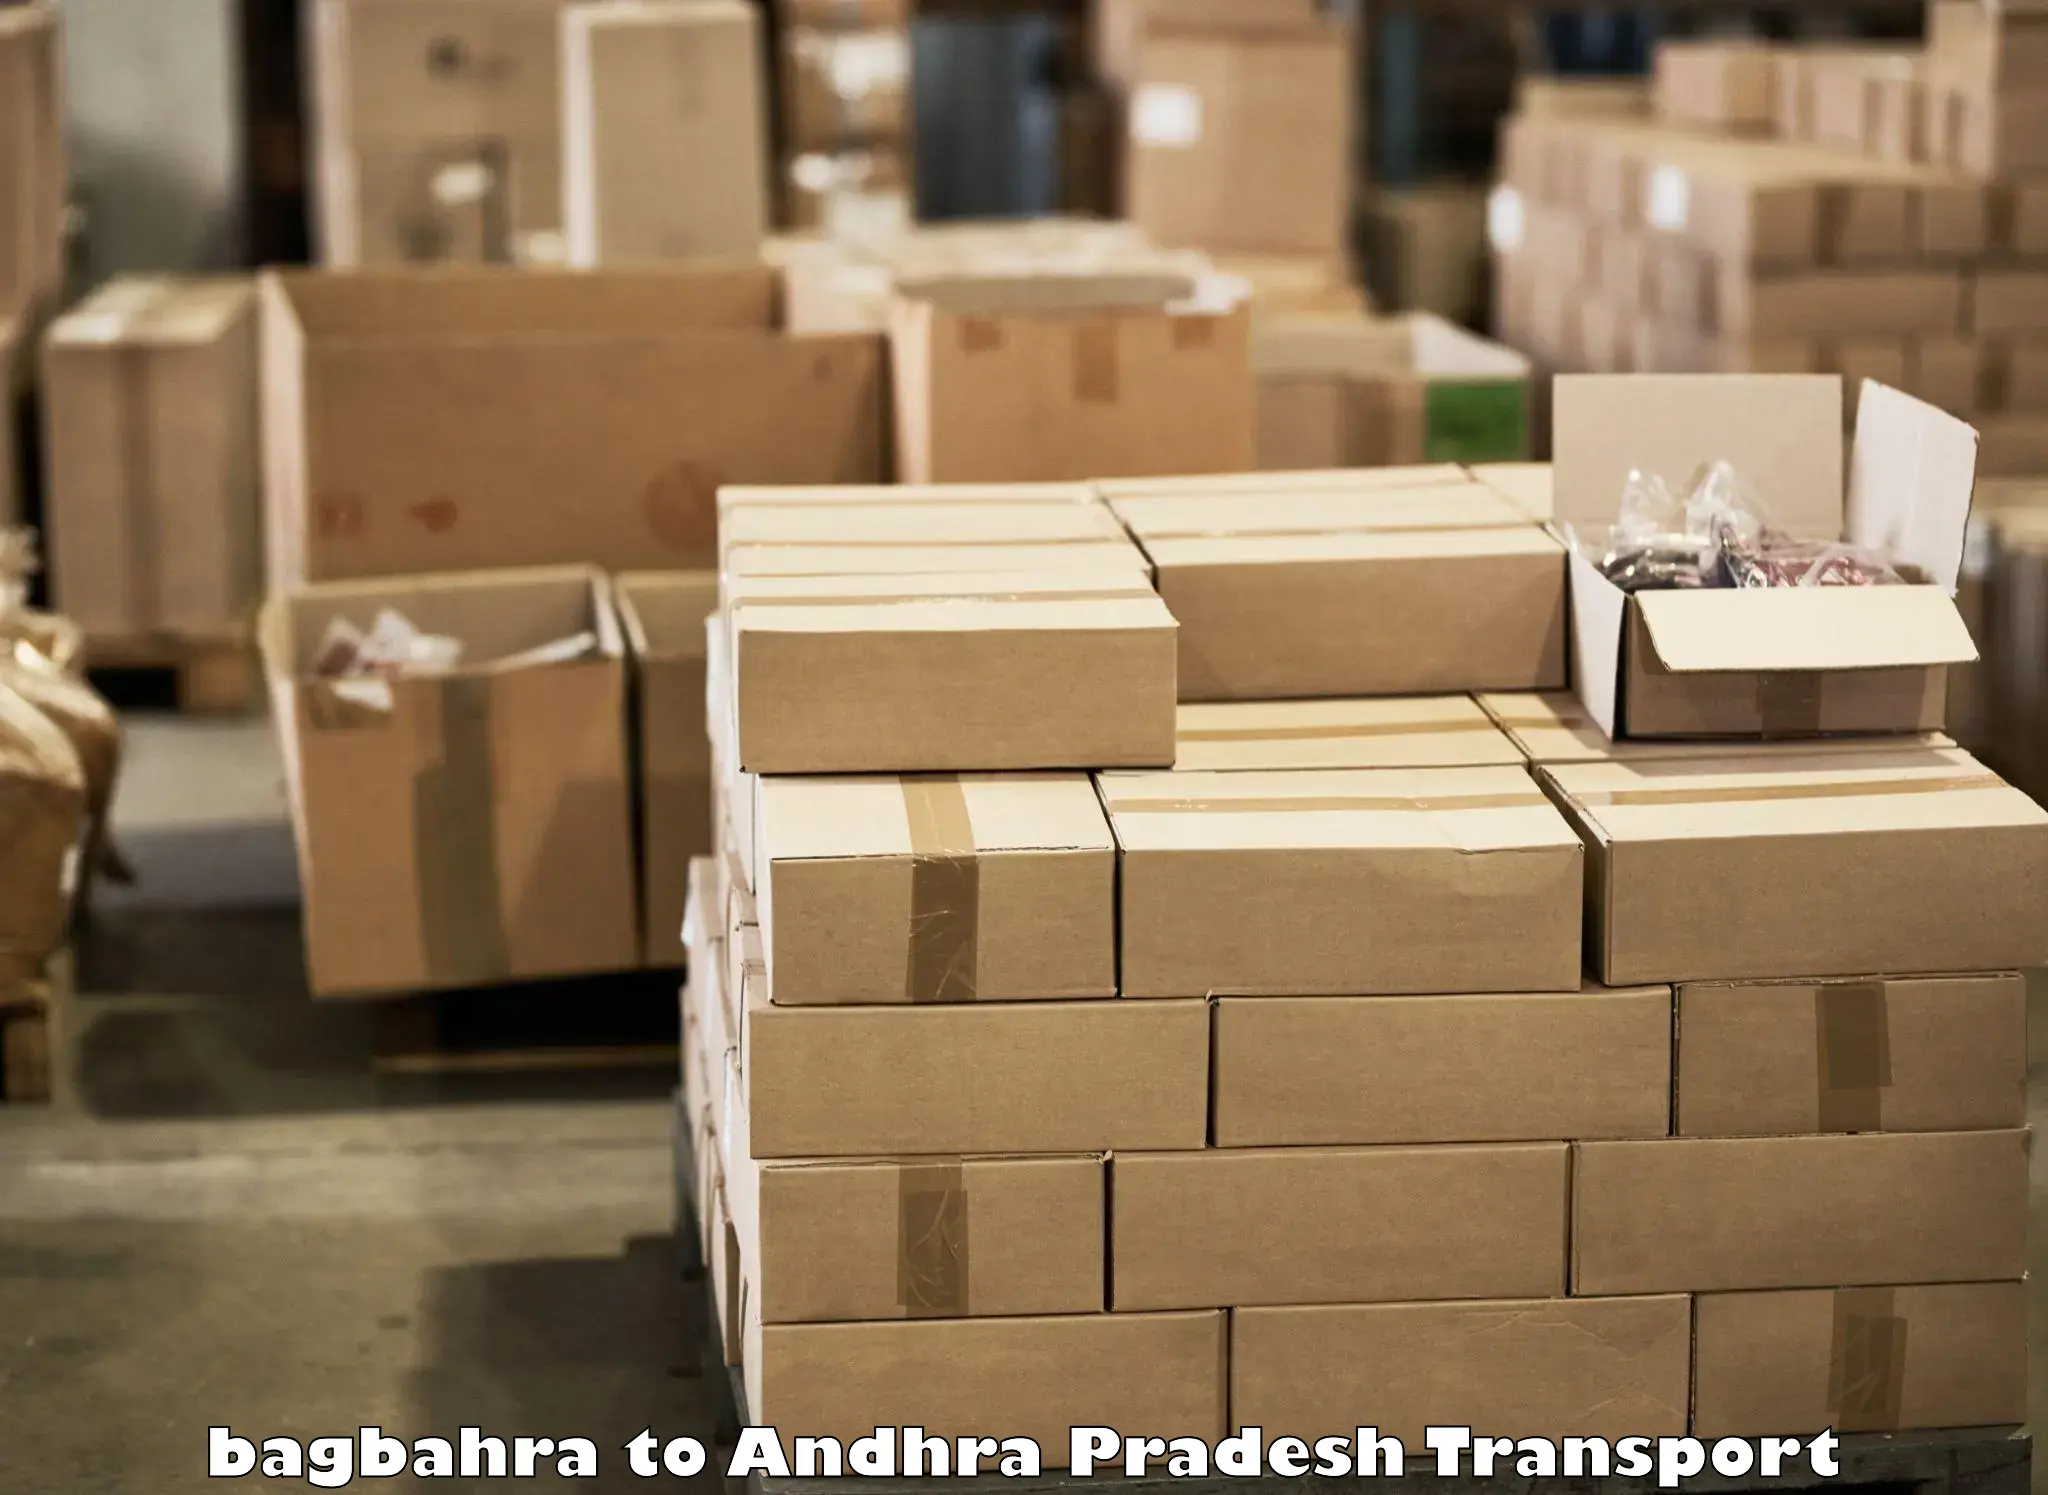 Furniture transport service bagbahra to Pakala